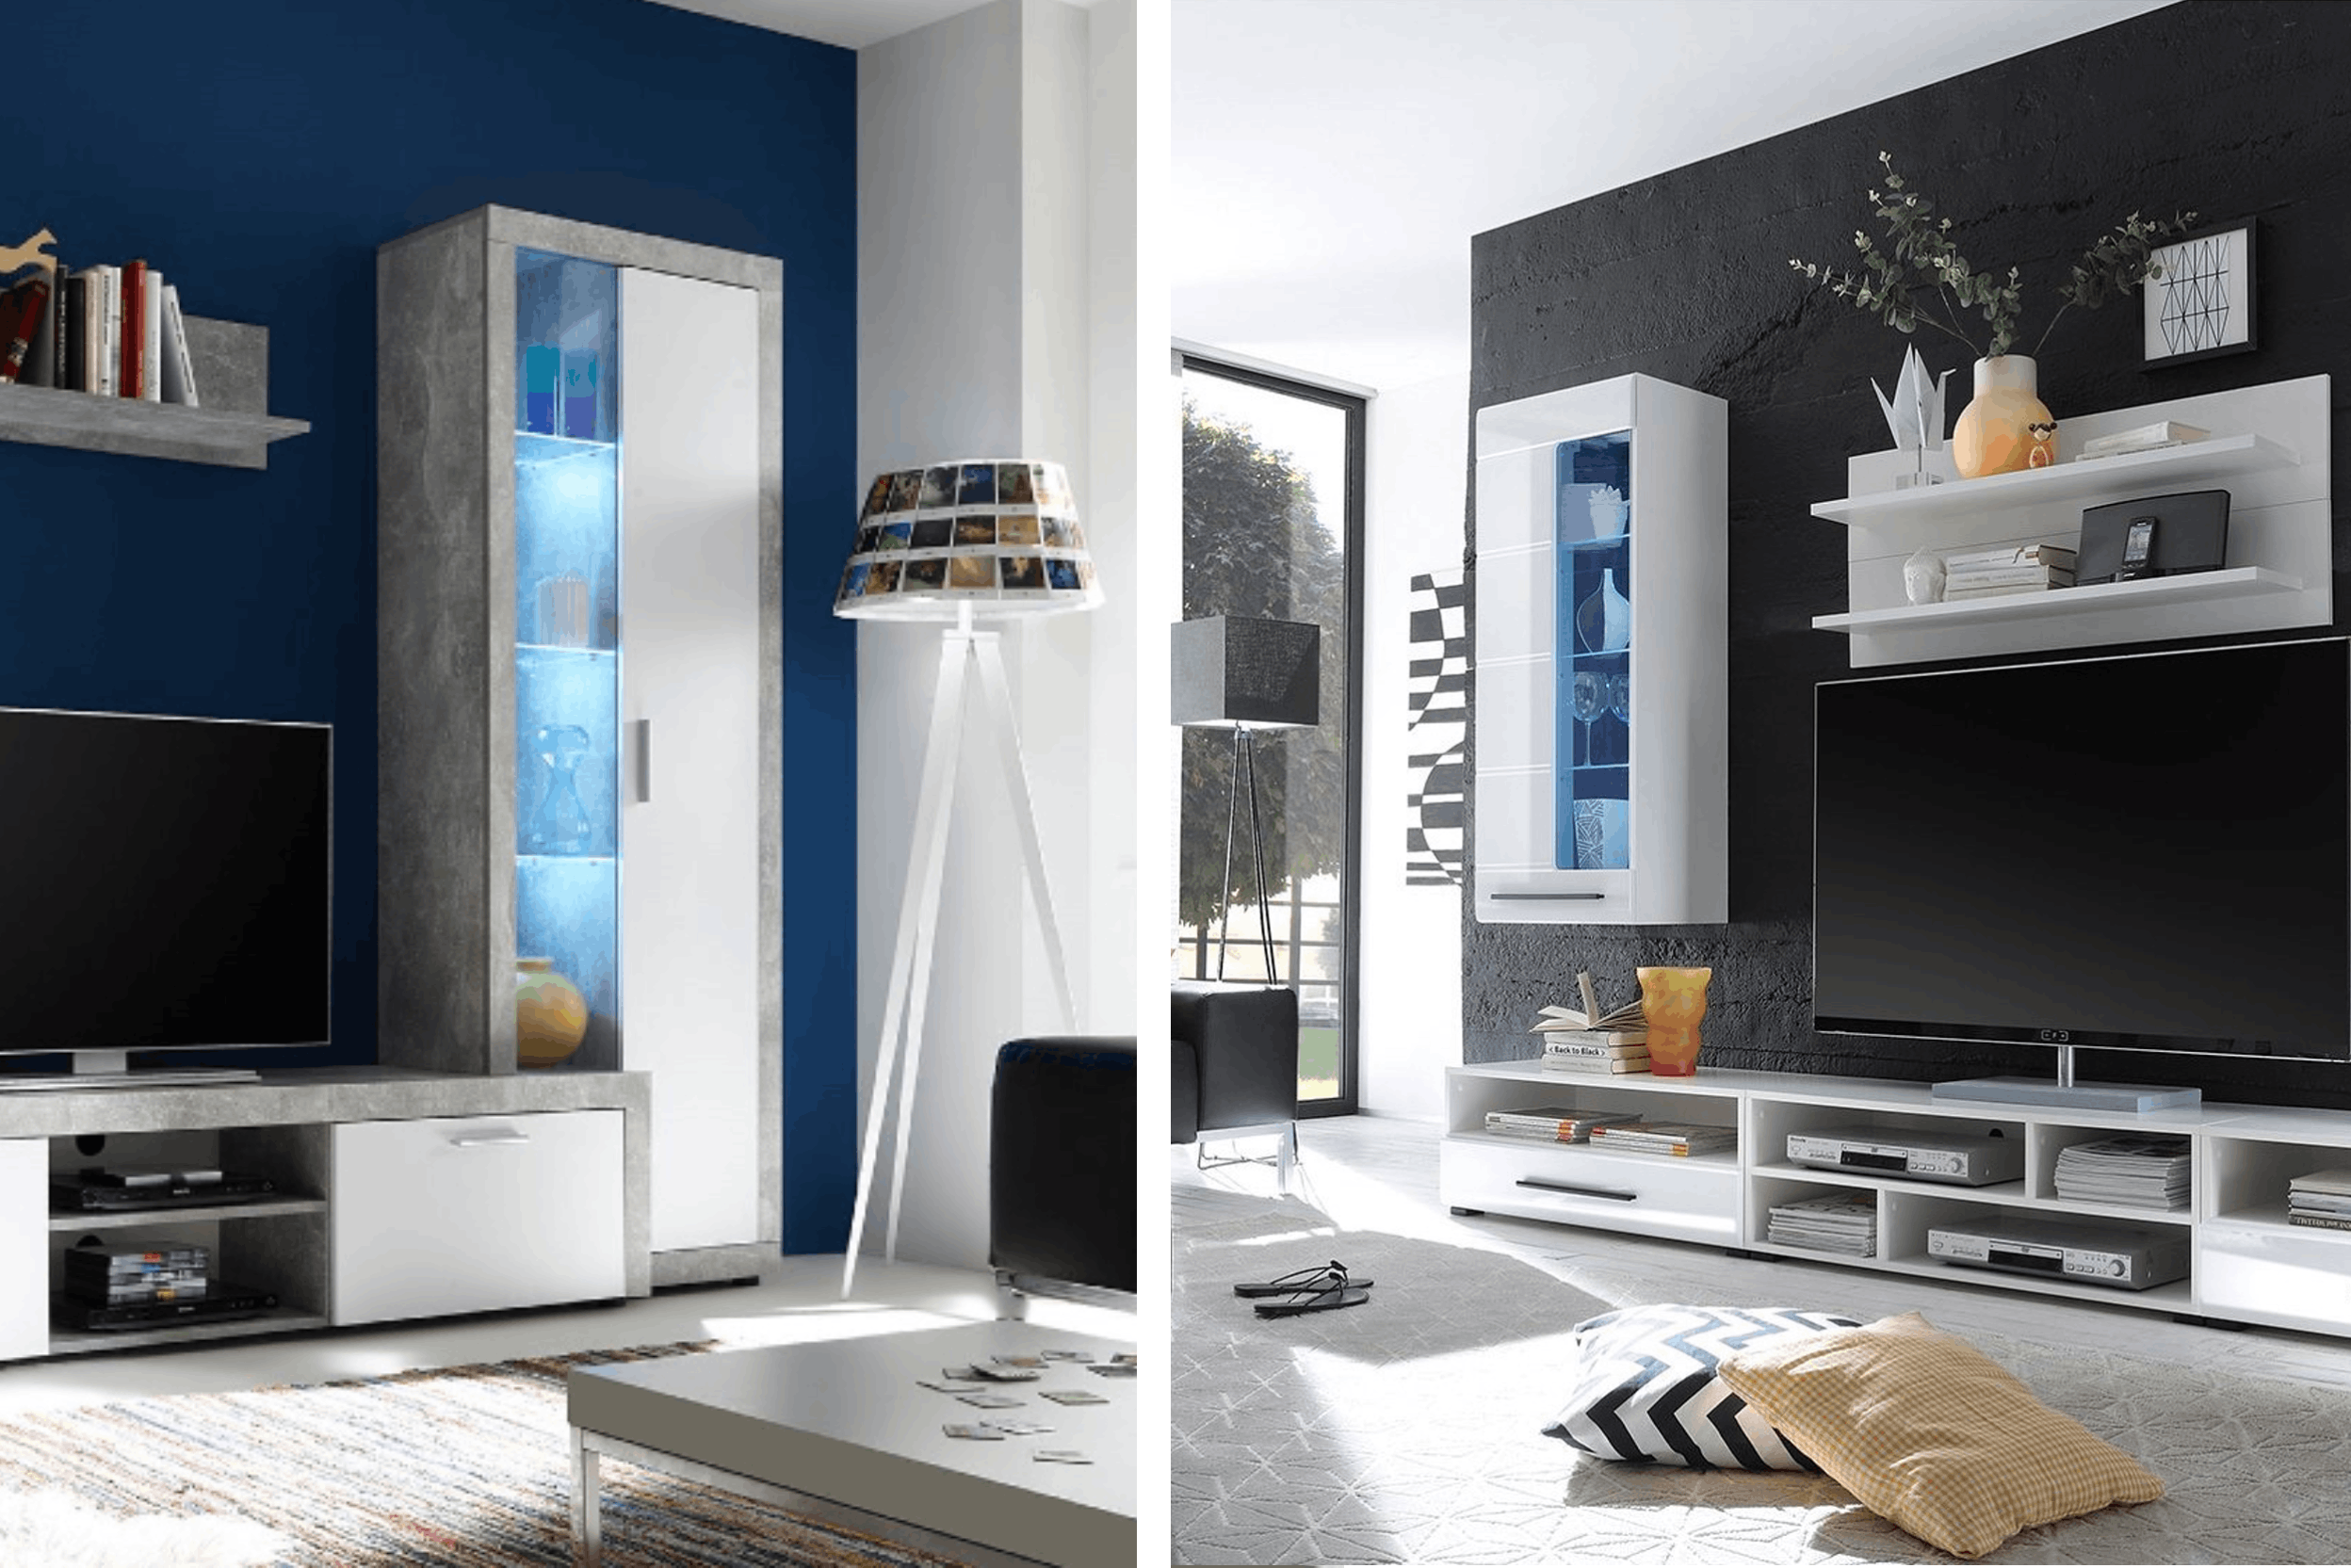 Due soggiorni moderni con mobili bianchi lucidi, lampade treppiede e pareti scure, una blu e una nera